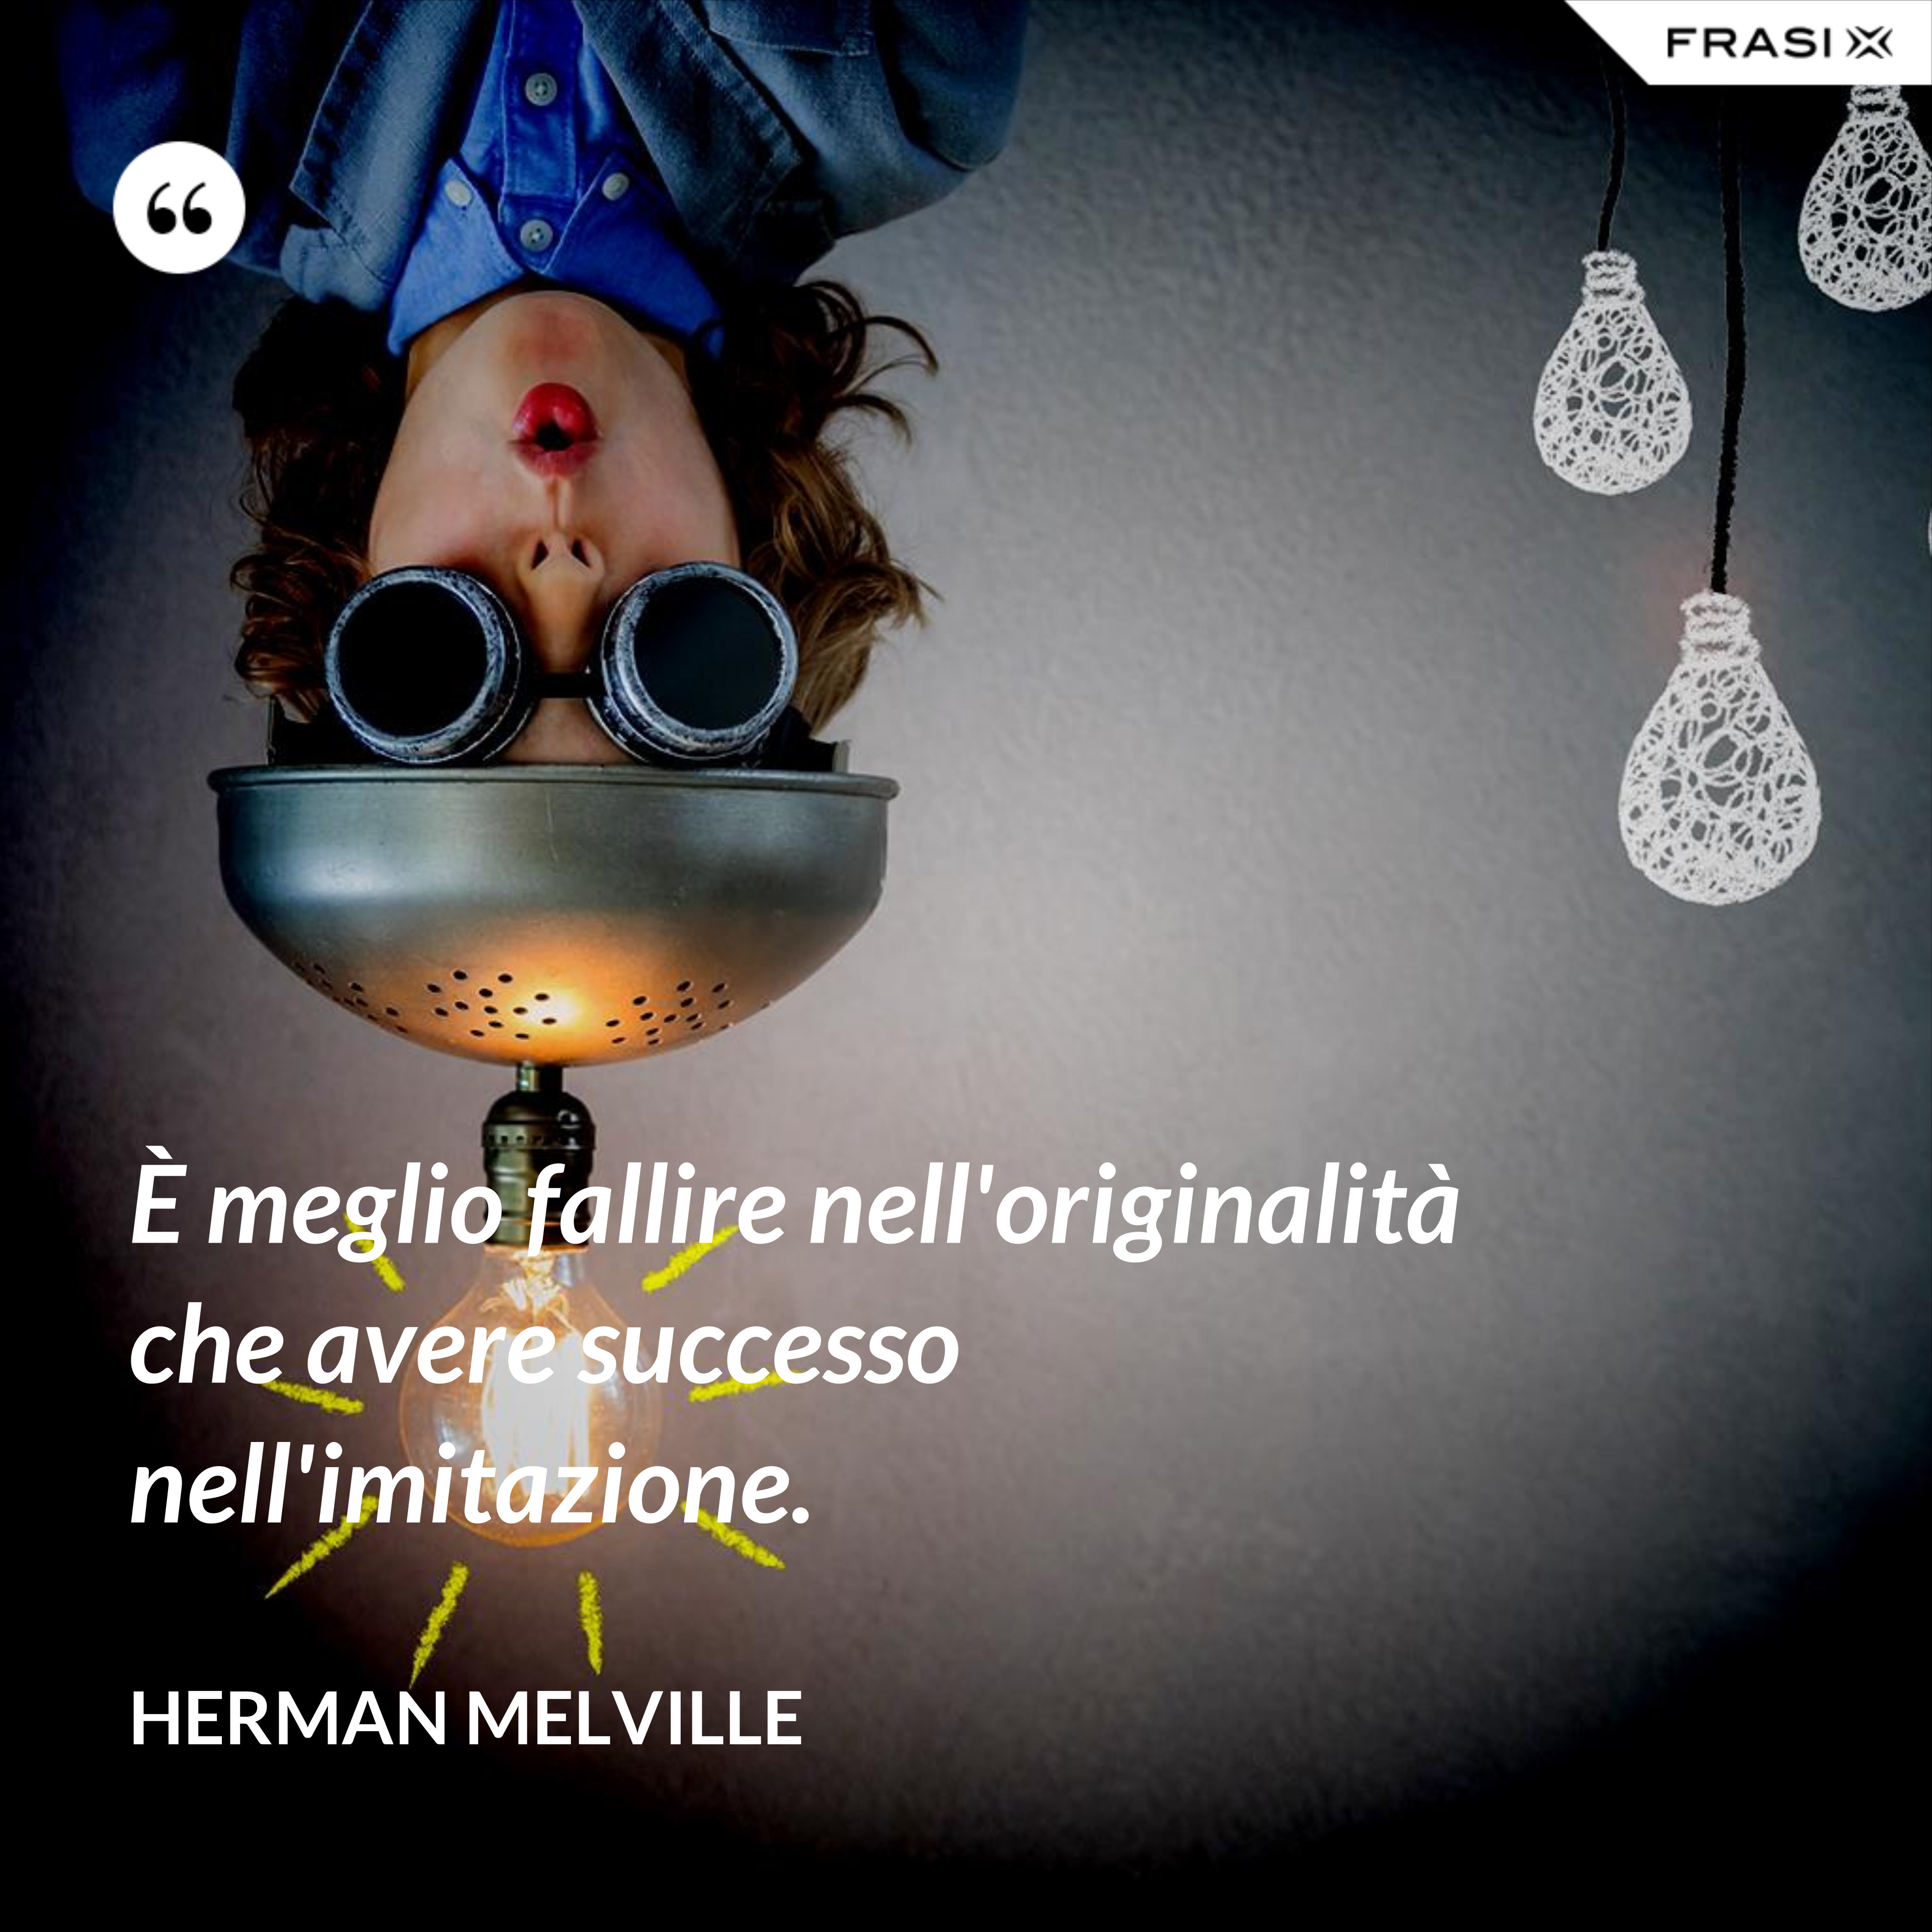 È meglio fallire nell'originalità che avere successo nell'imitazione. - Herman Melville